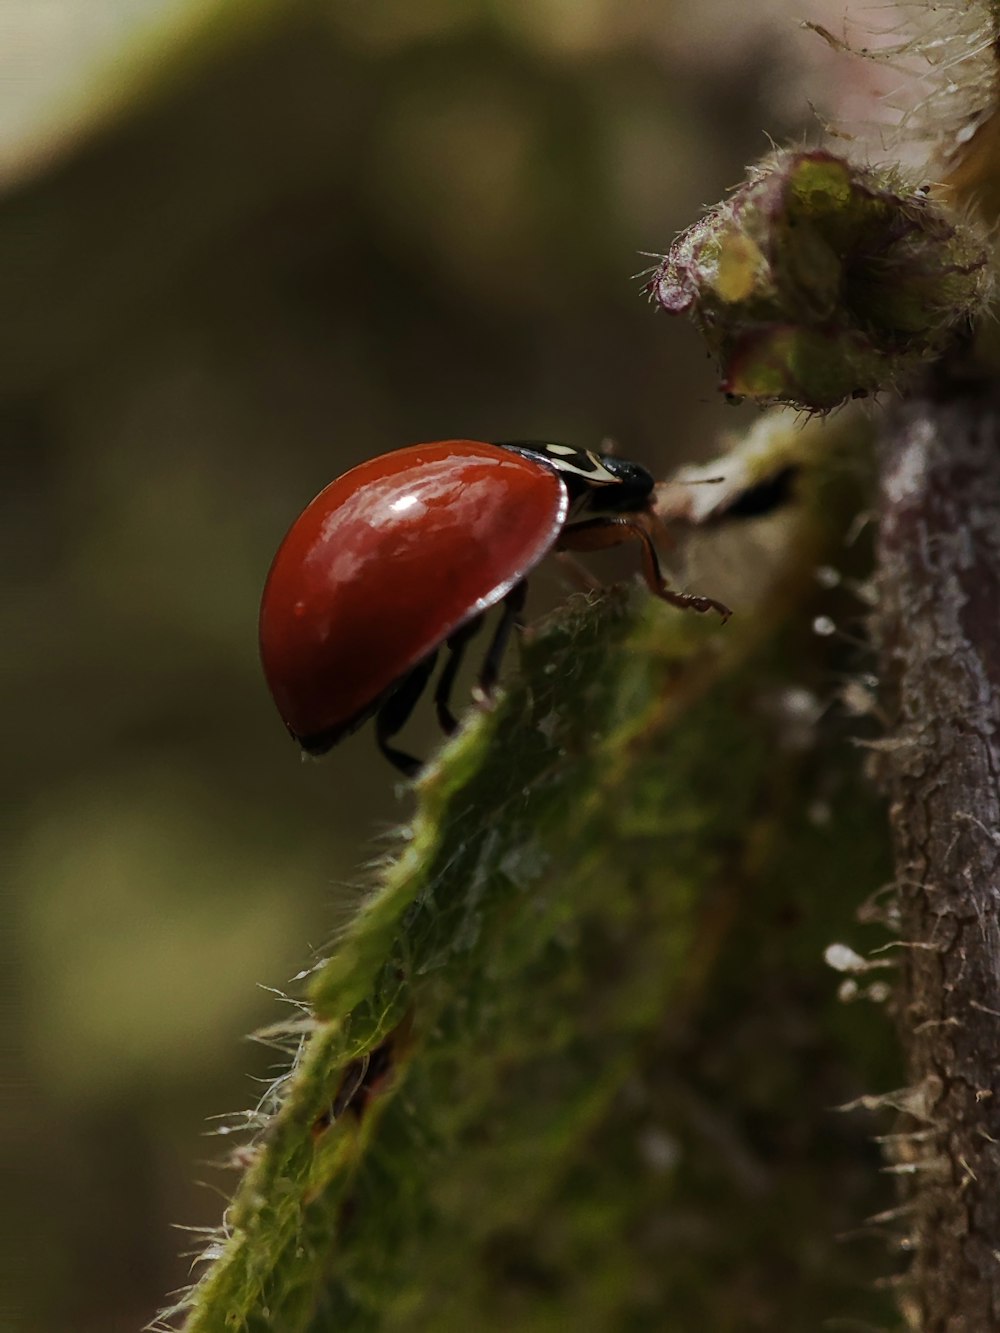 Un primer plano de un insecto rojo y negro en una hoja